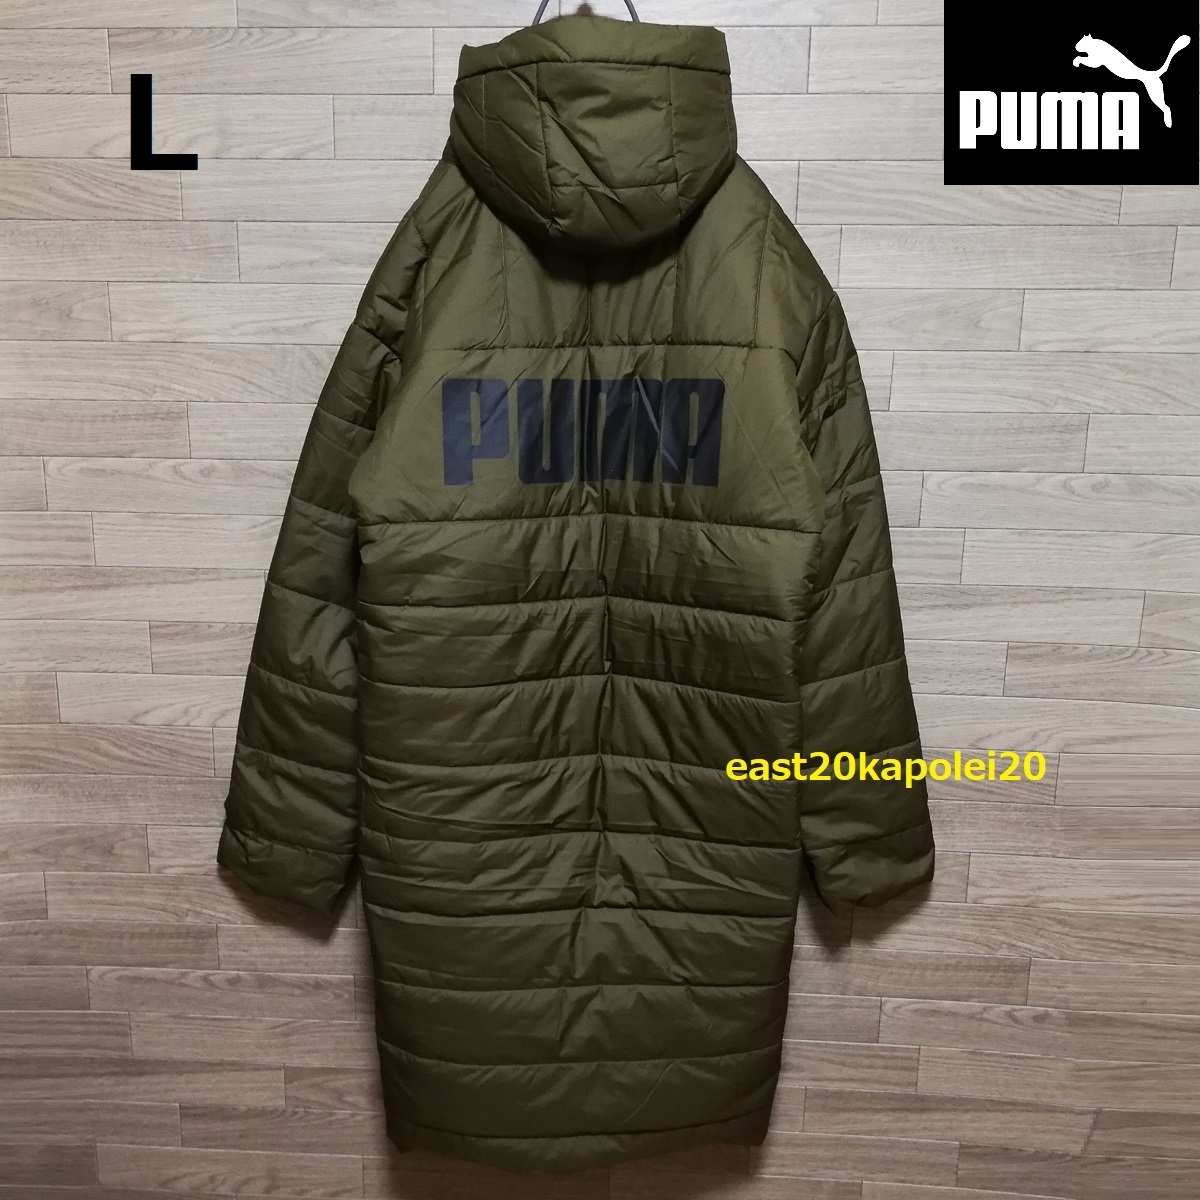 新品 PUMA プーマ ビッグ ロゴ プリント メンズ ウェア 中綿 ESS+ パデッドコート L size オリーブ 未使用 ベンチコート ロングコート 防寒